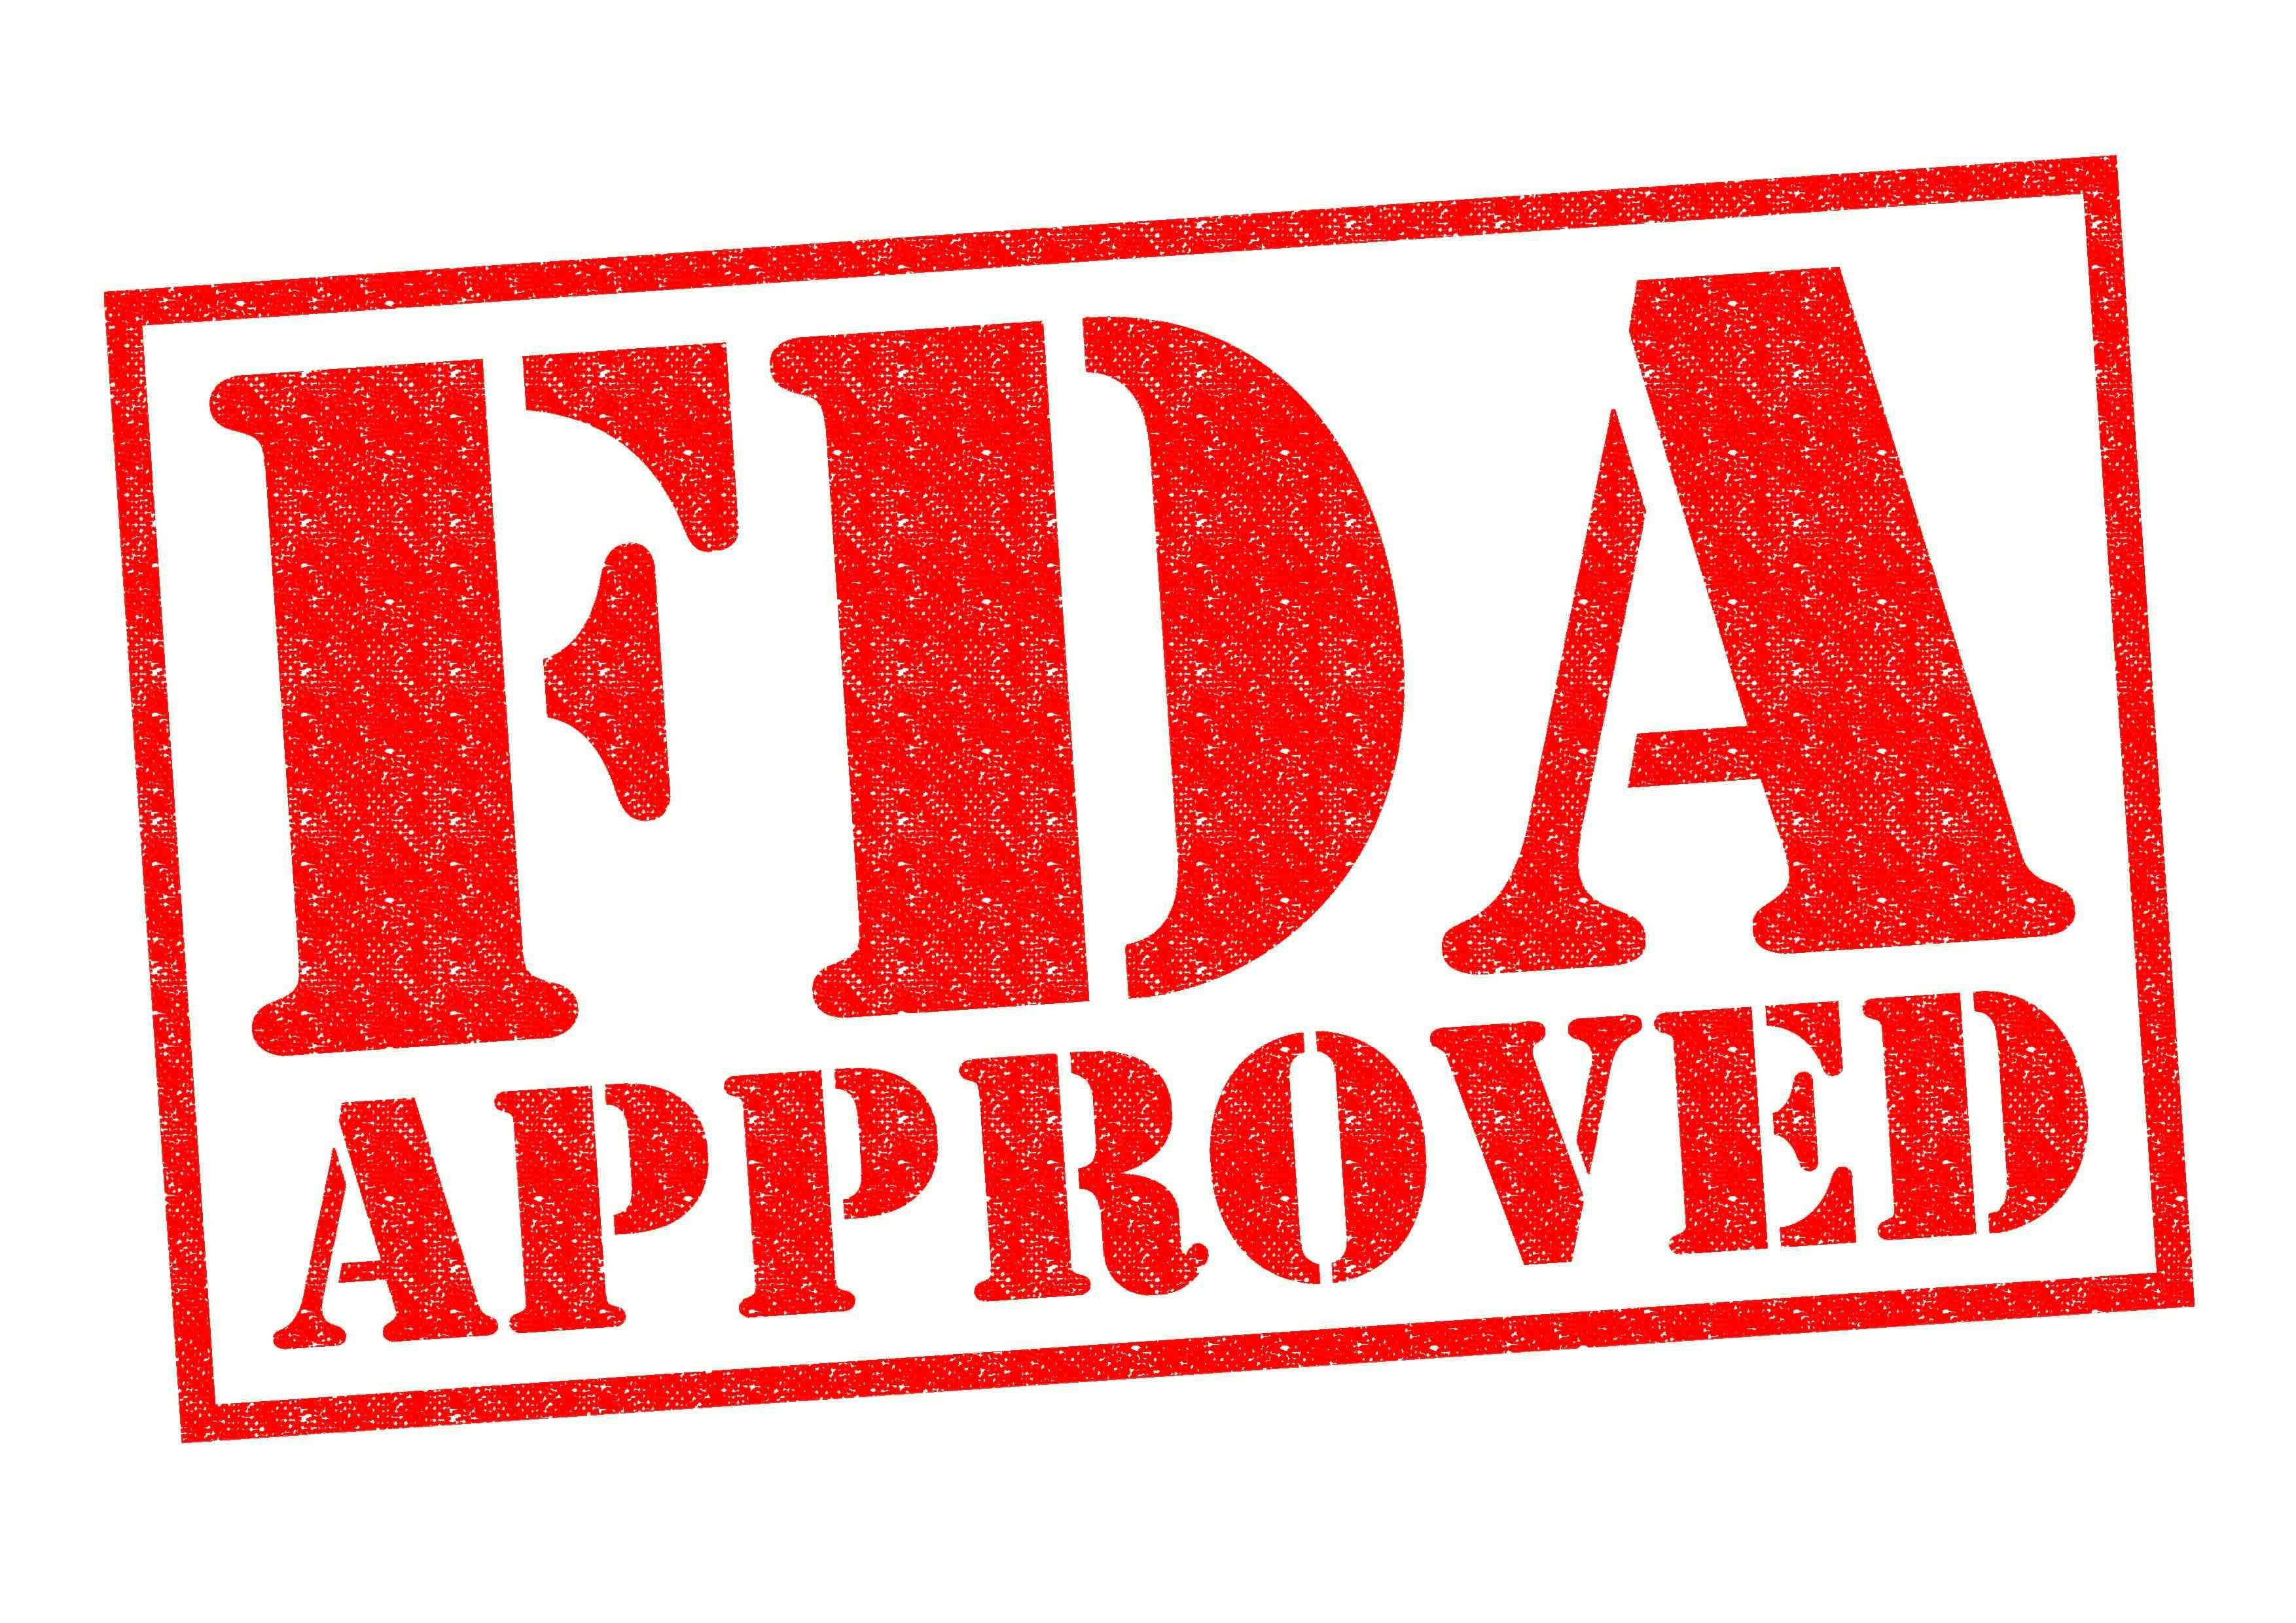 Red FDA approval stamp | image credit: chrisdorney - stock.adobe.com